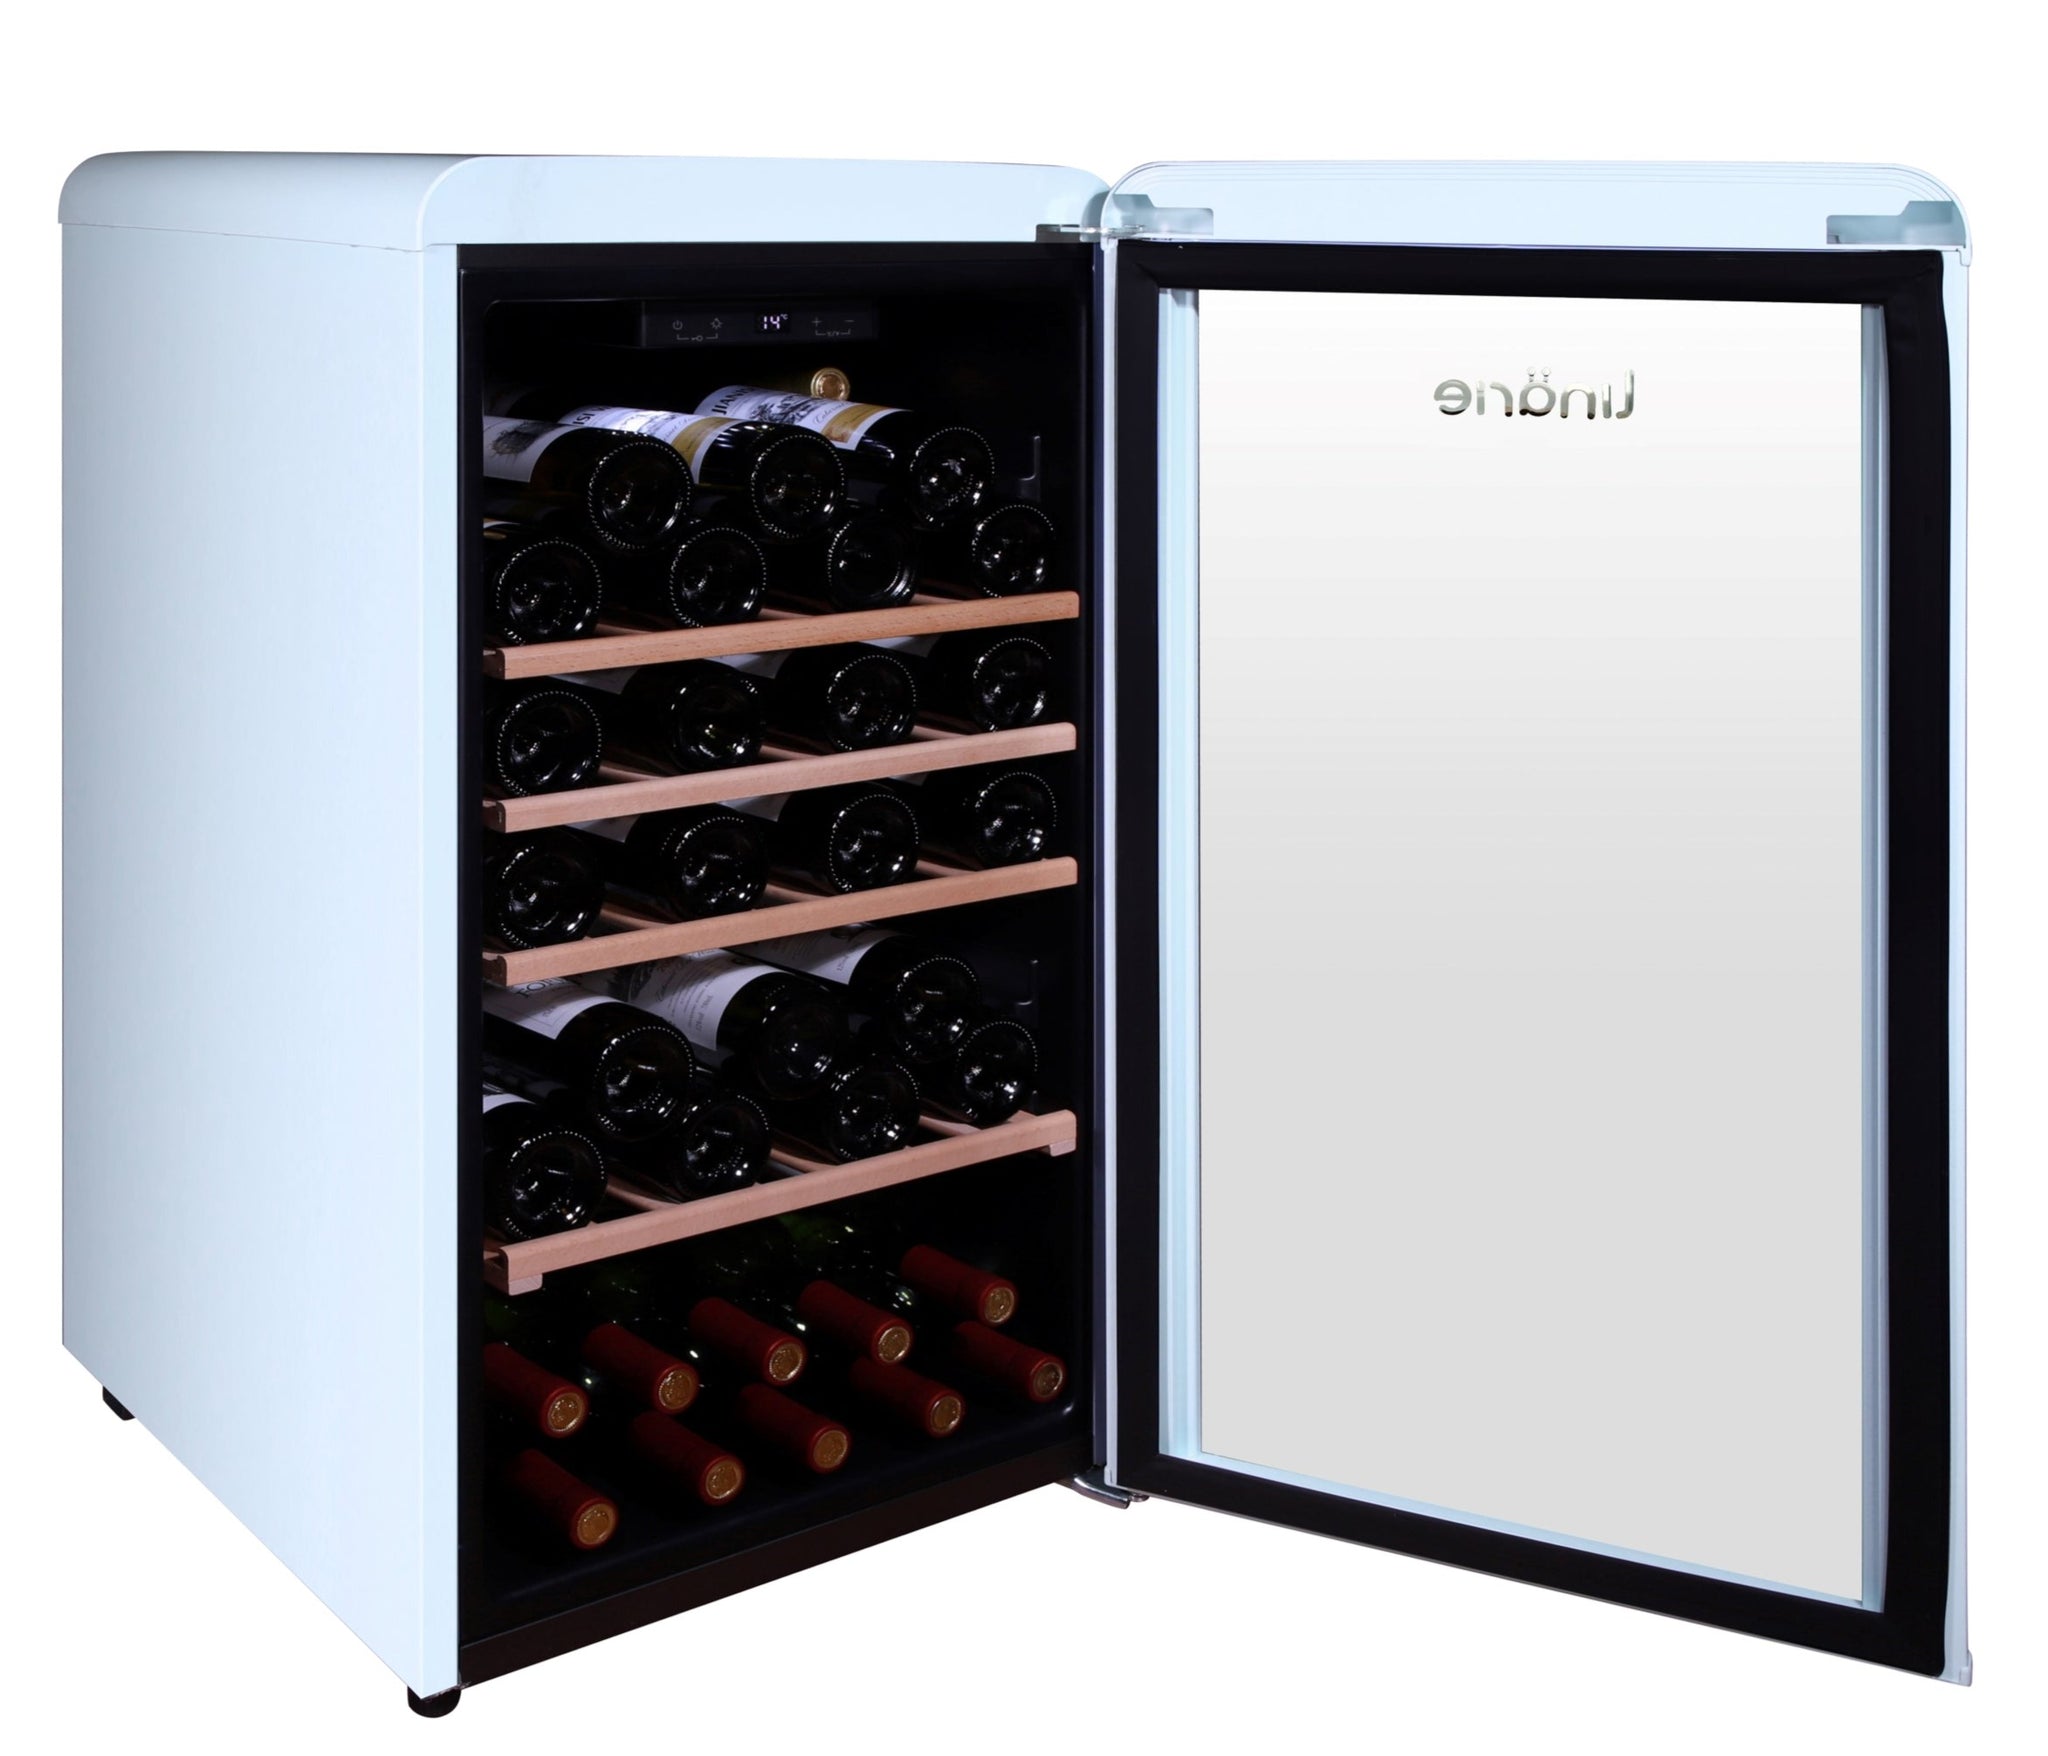 Linarie blue coloured retro fridge for storing wine bottles